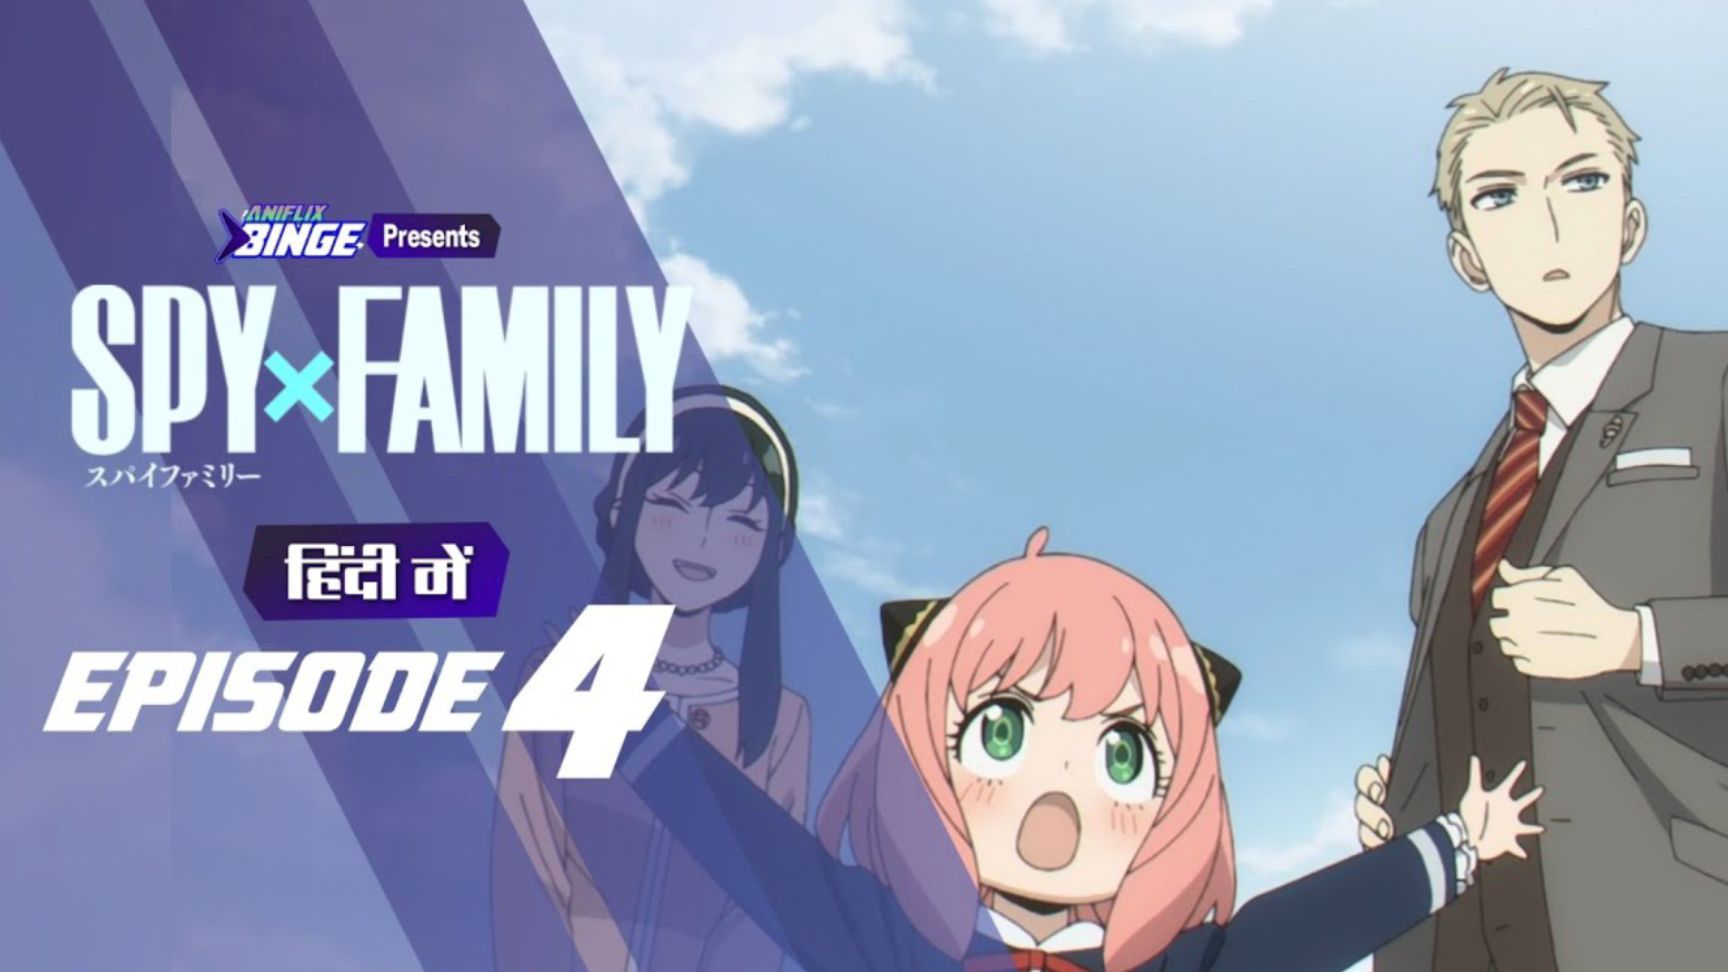 Spy x Family Episode 4: Watch Now